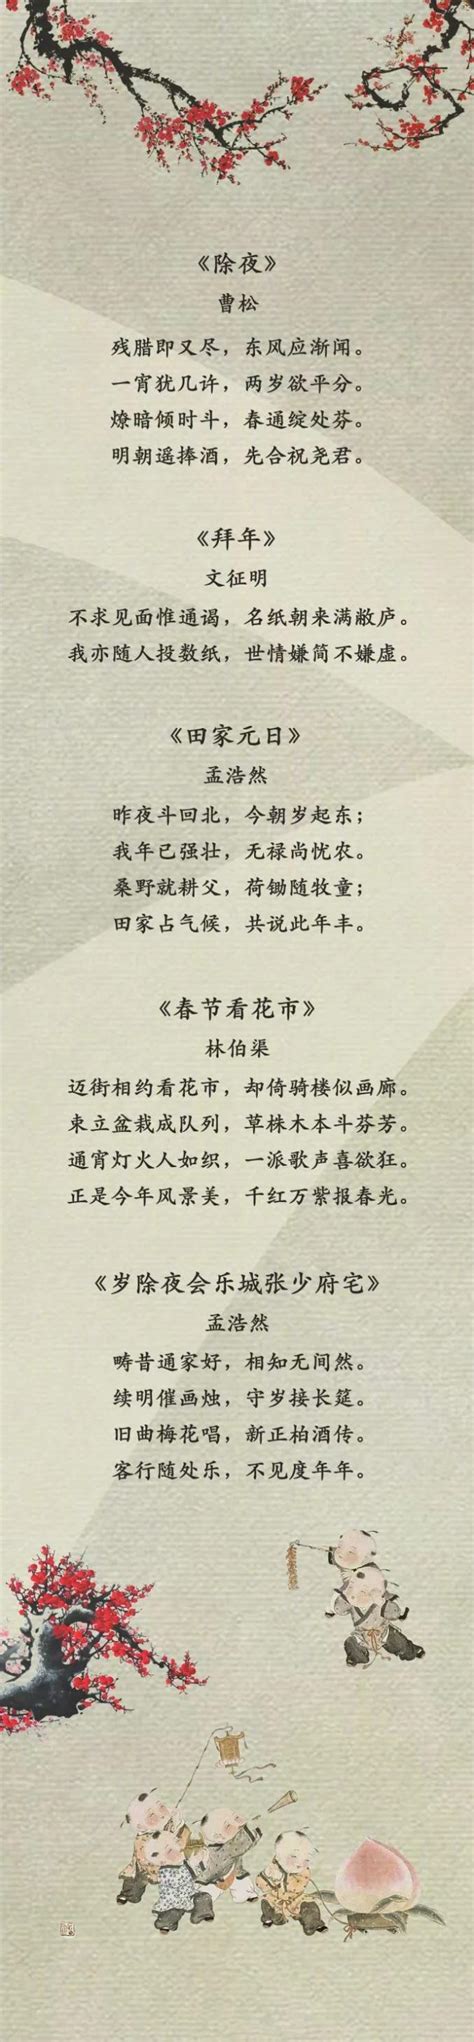 春节诗歌八首